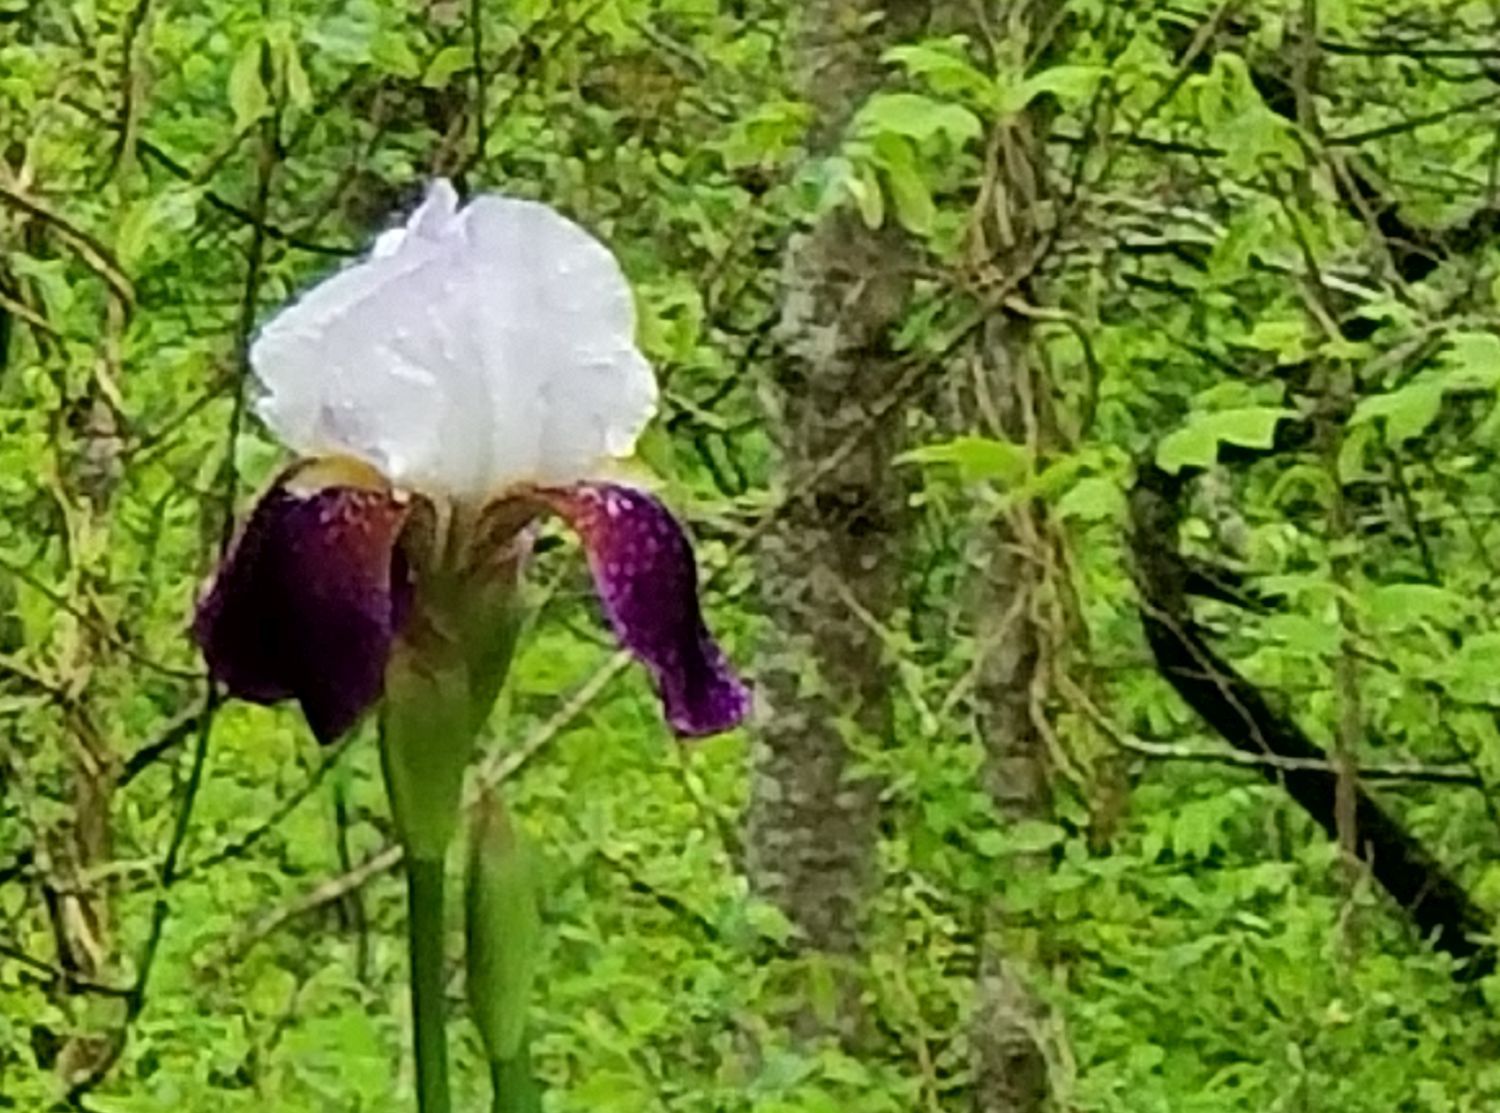 20180505_152113 - Purple and white iris.jpg